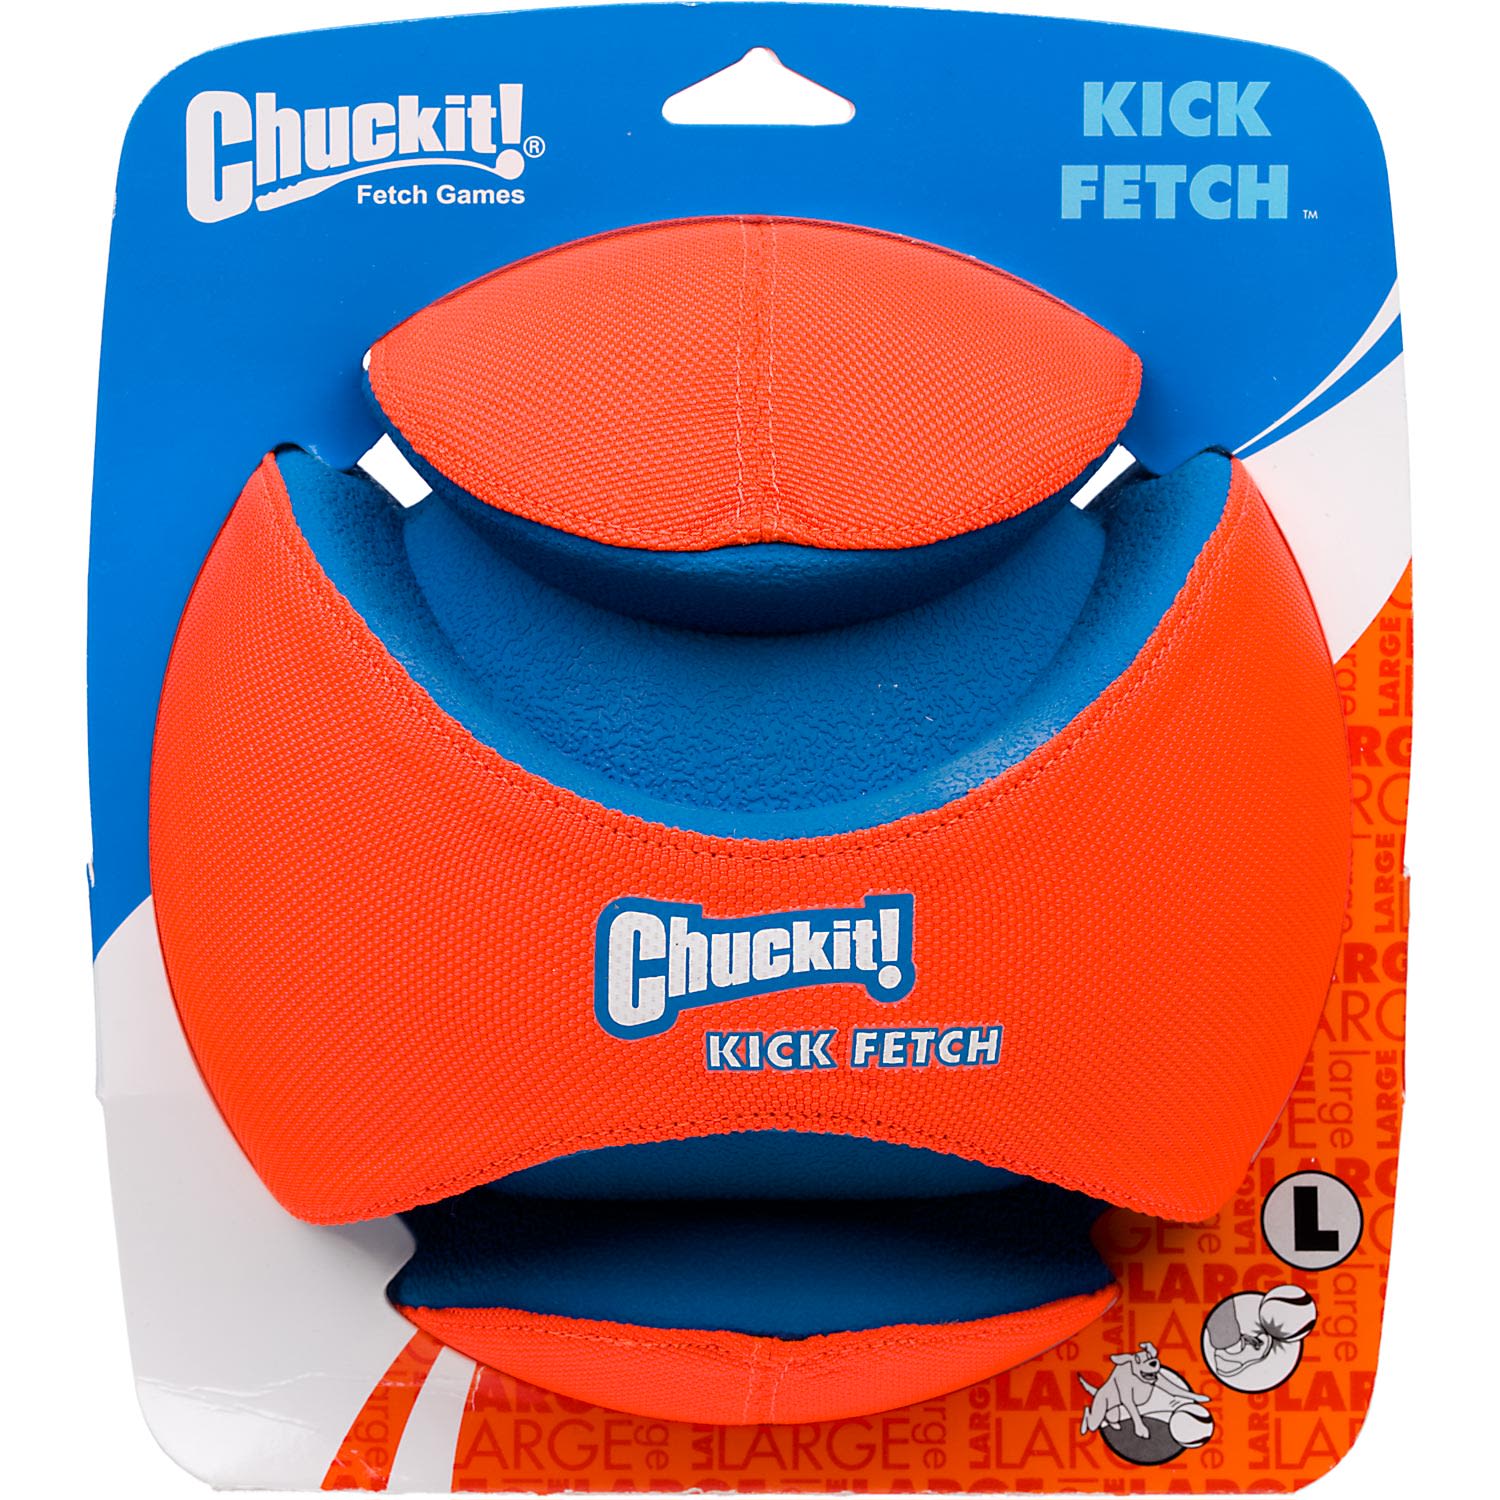 UPC 660048001959 product image for Chuckit! Kick Fetch Ball Dog Toy, Large, Orange | upcitemdb.com